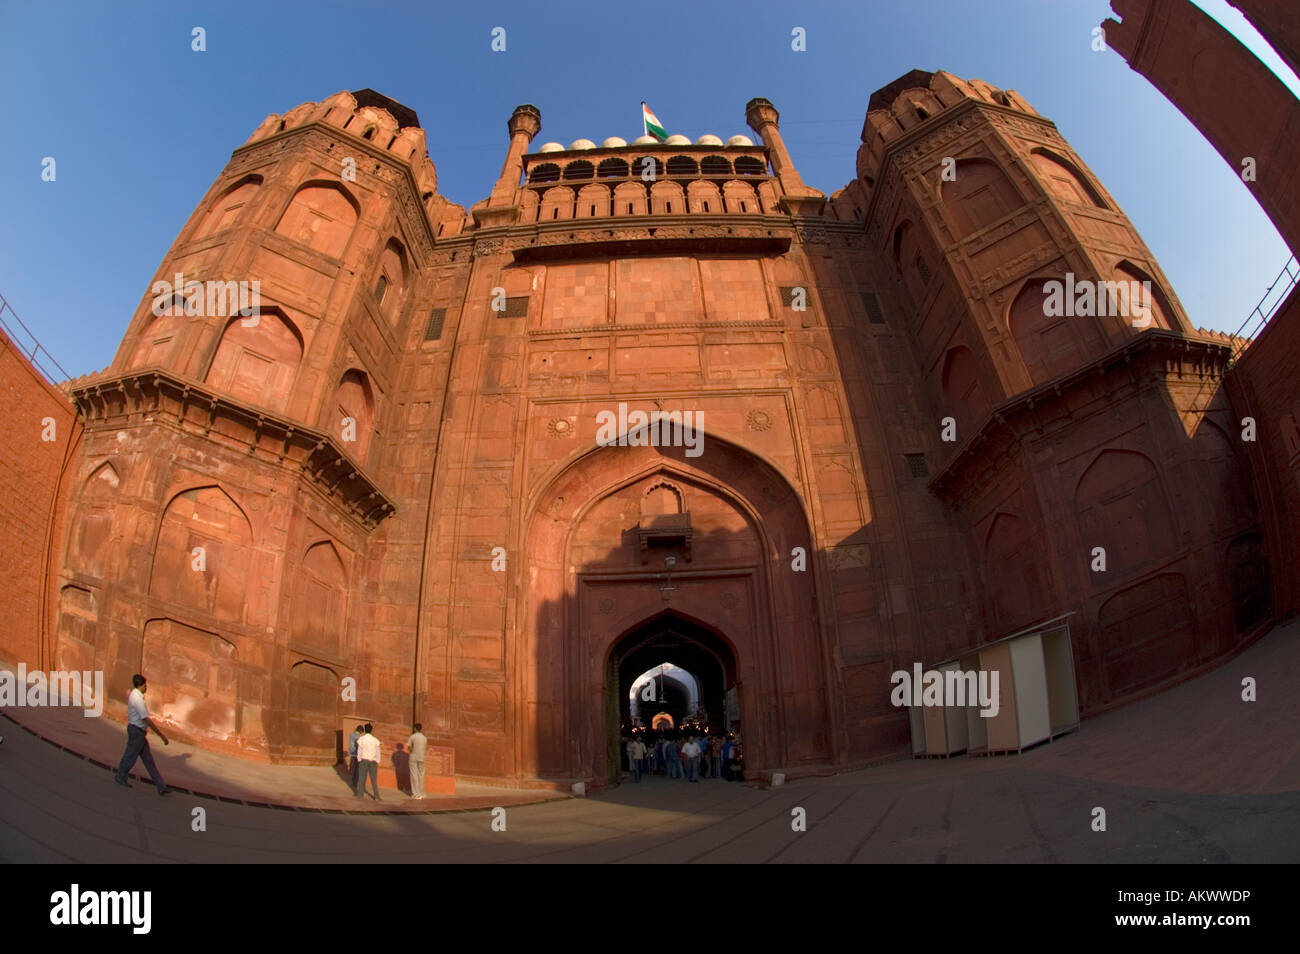 Das Lahore-Tor des berühmten Red Fort oder Lal Qila in Shahjahanabad, Alt-Delhi, Indien. Stockfoto